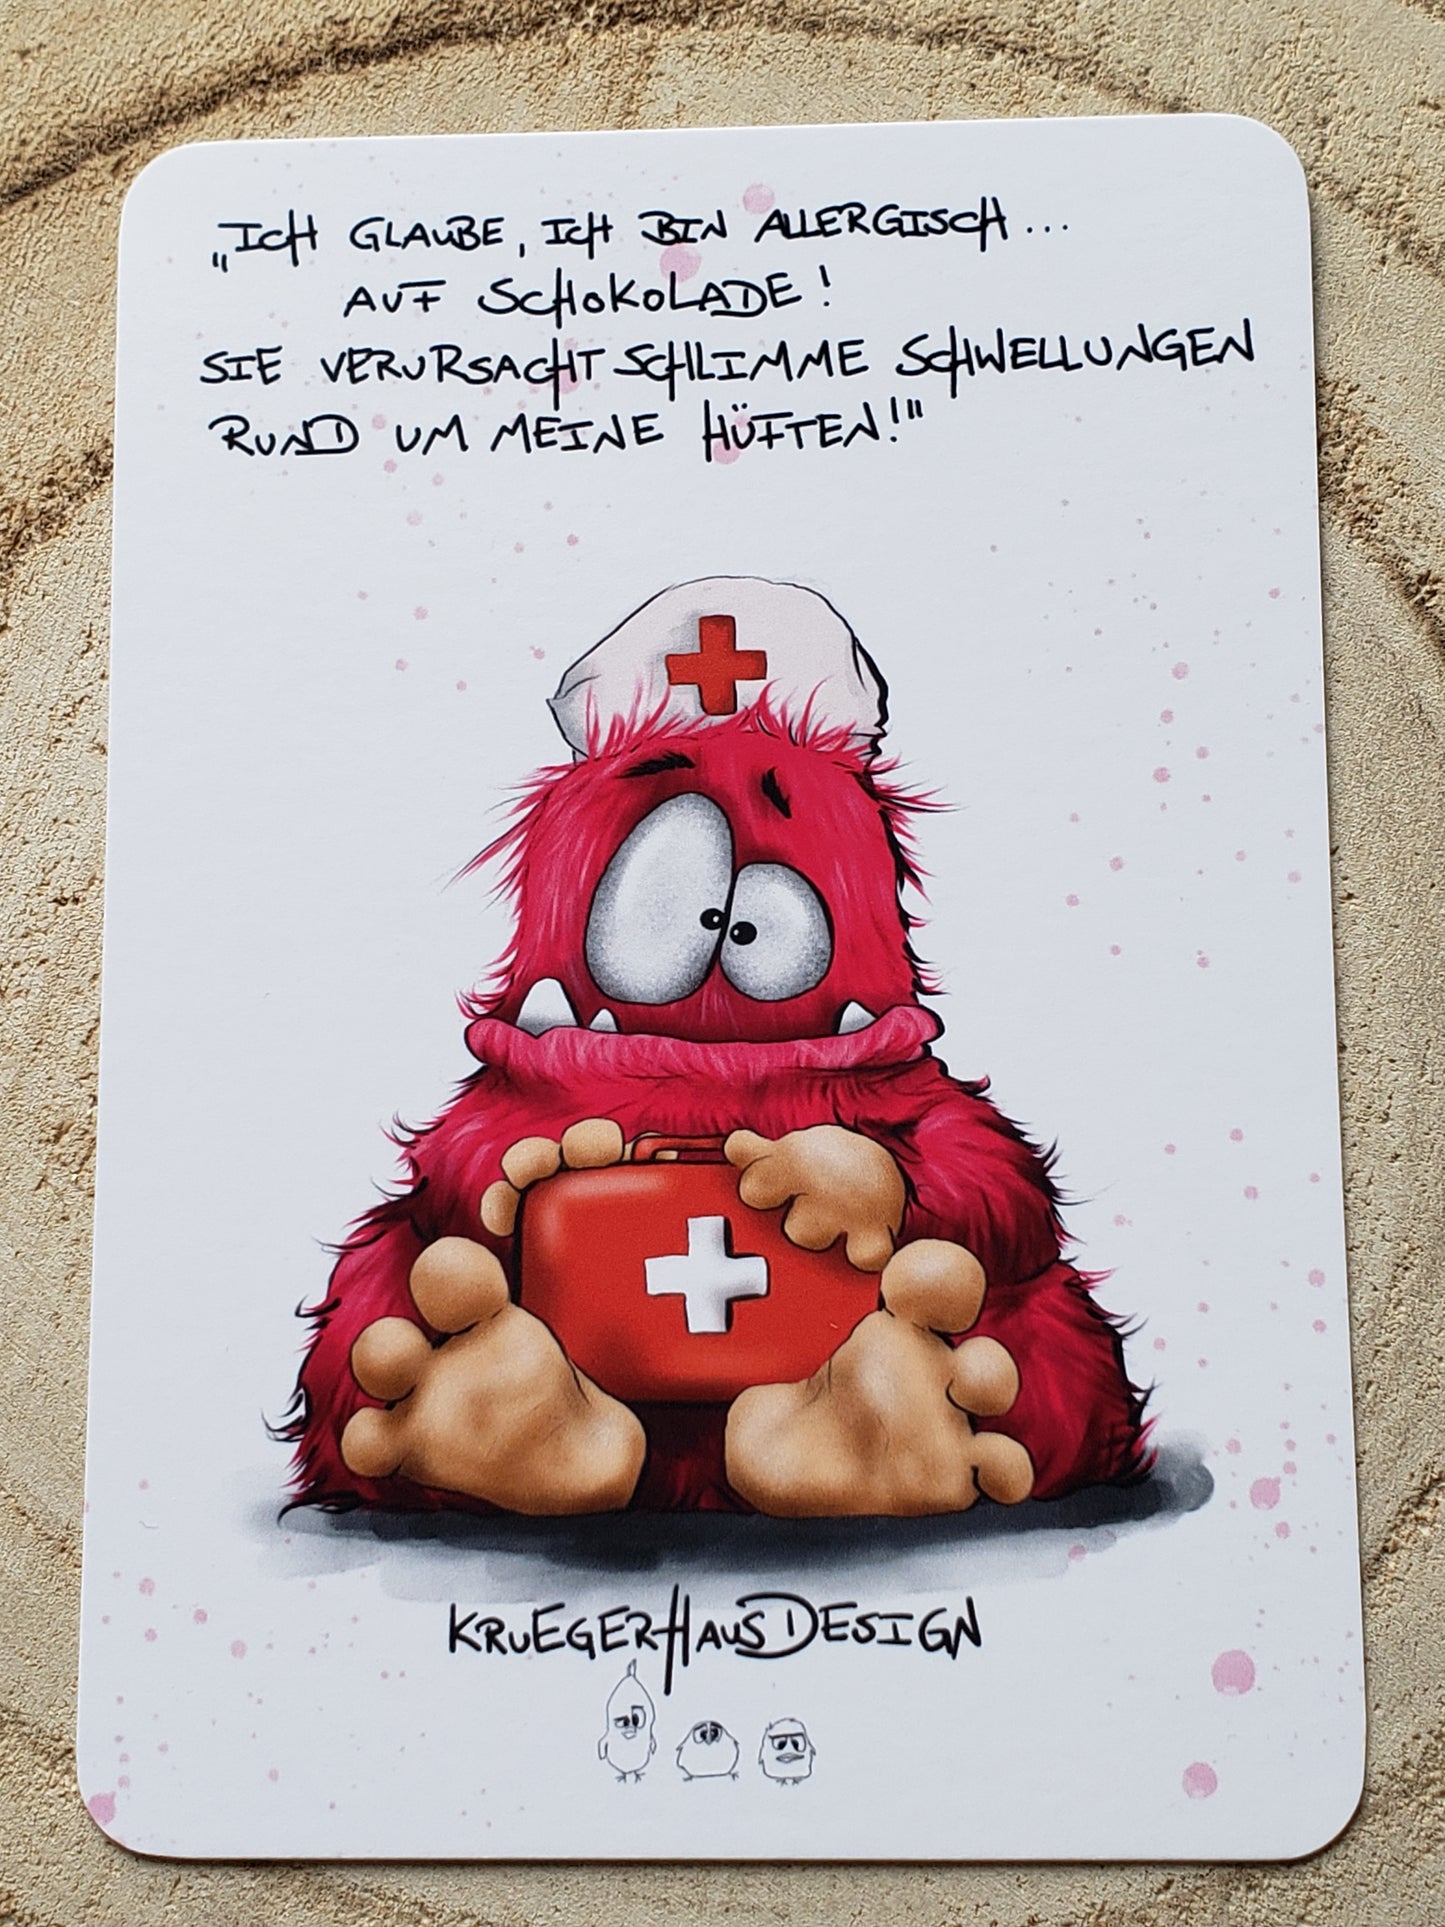 Postkarte Monster Kruegerhausdesign  "Ich glaube, ich bin allergisch... auf Schokolade!"